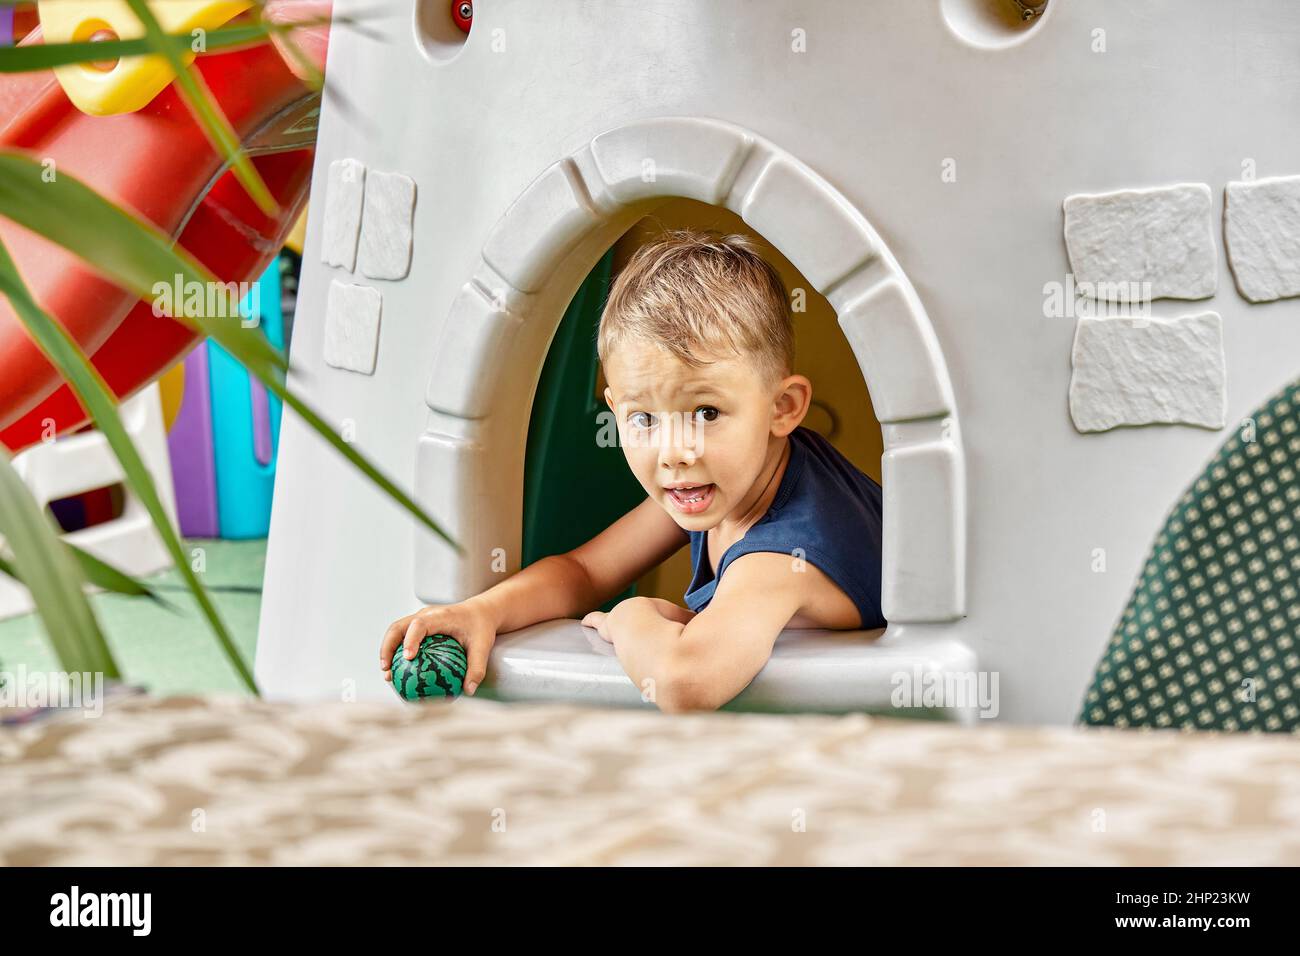 Lächelnder Junge spielt im Spielzeughaus im Unterhaltungsbereich des Restaurants mit Ball. Der blonde kleine Junge verbringt seine Freizeit damit, Nahaufnahme zu spielen Stockfoto